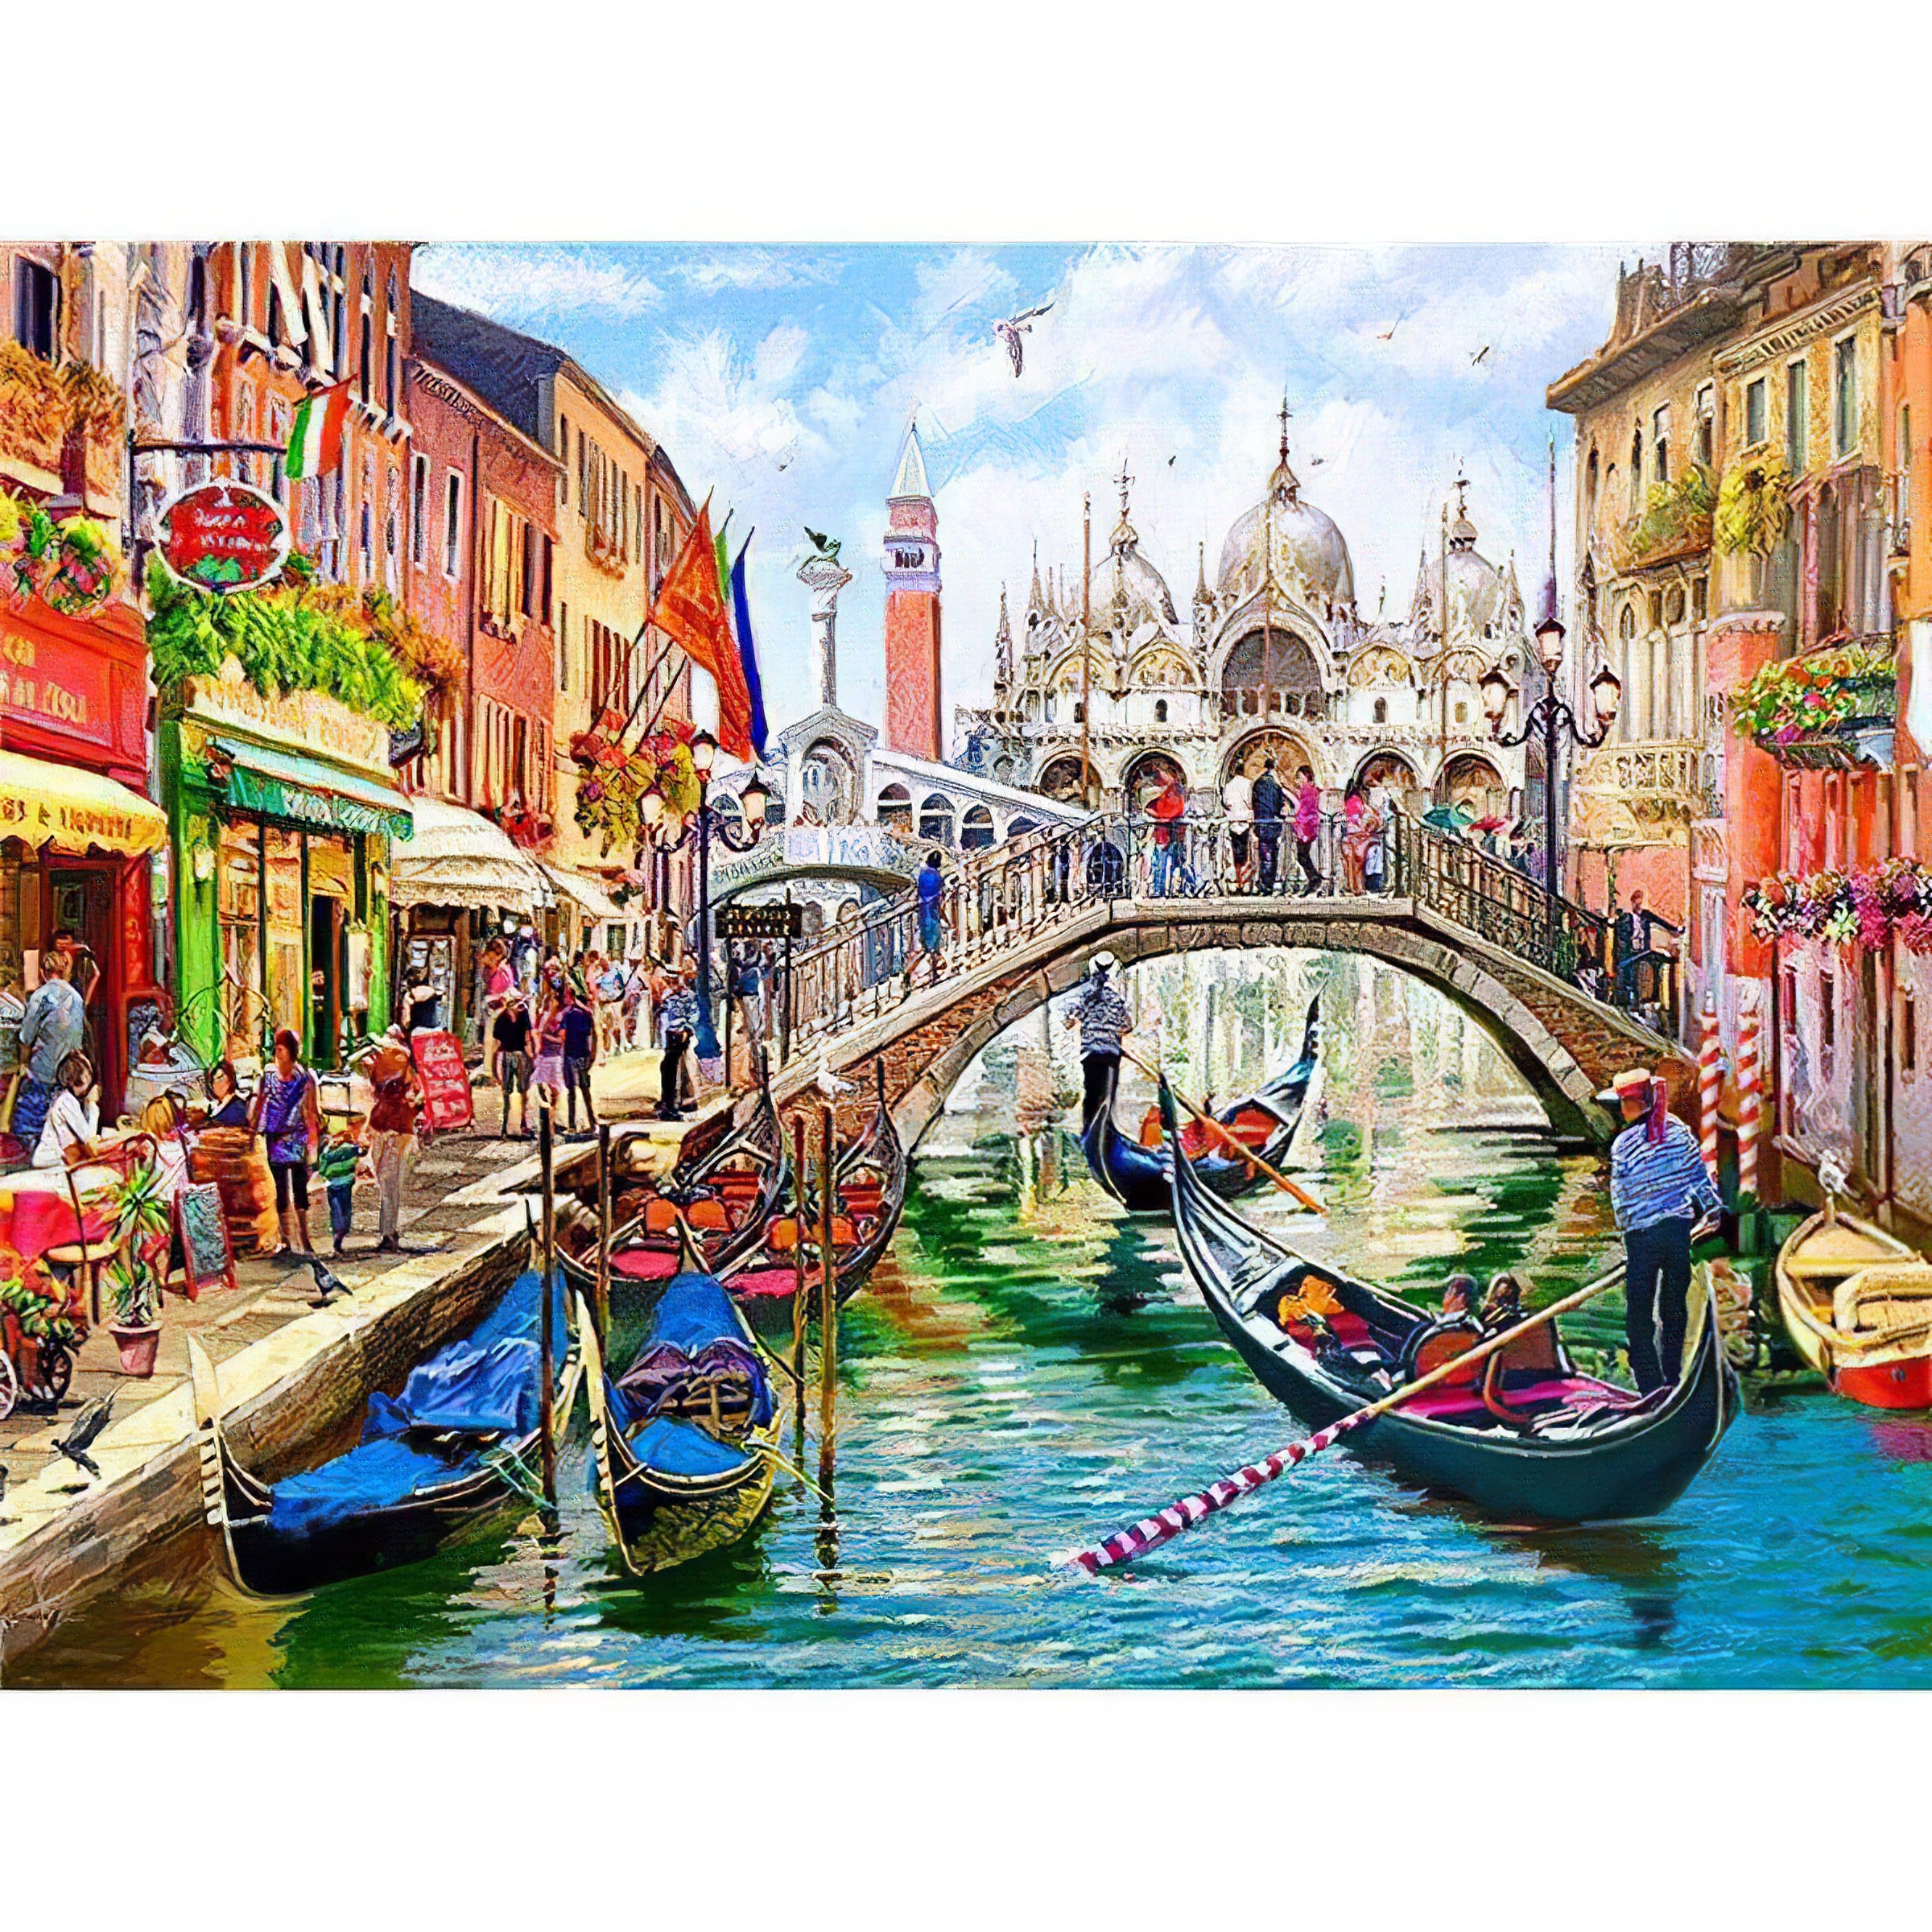 Voyage en bateau sur les canaux de Venise